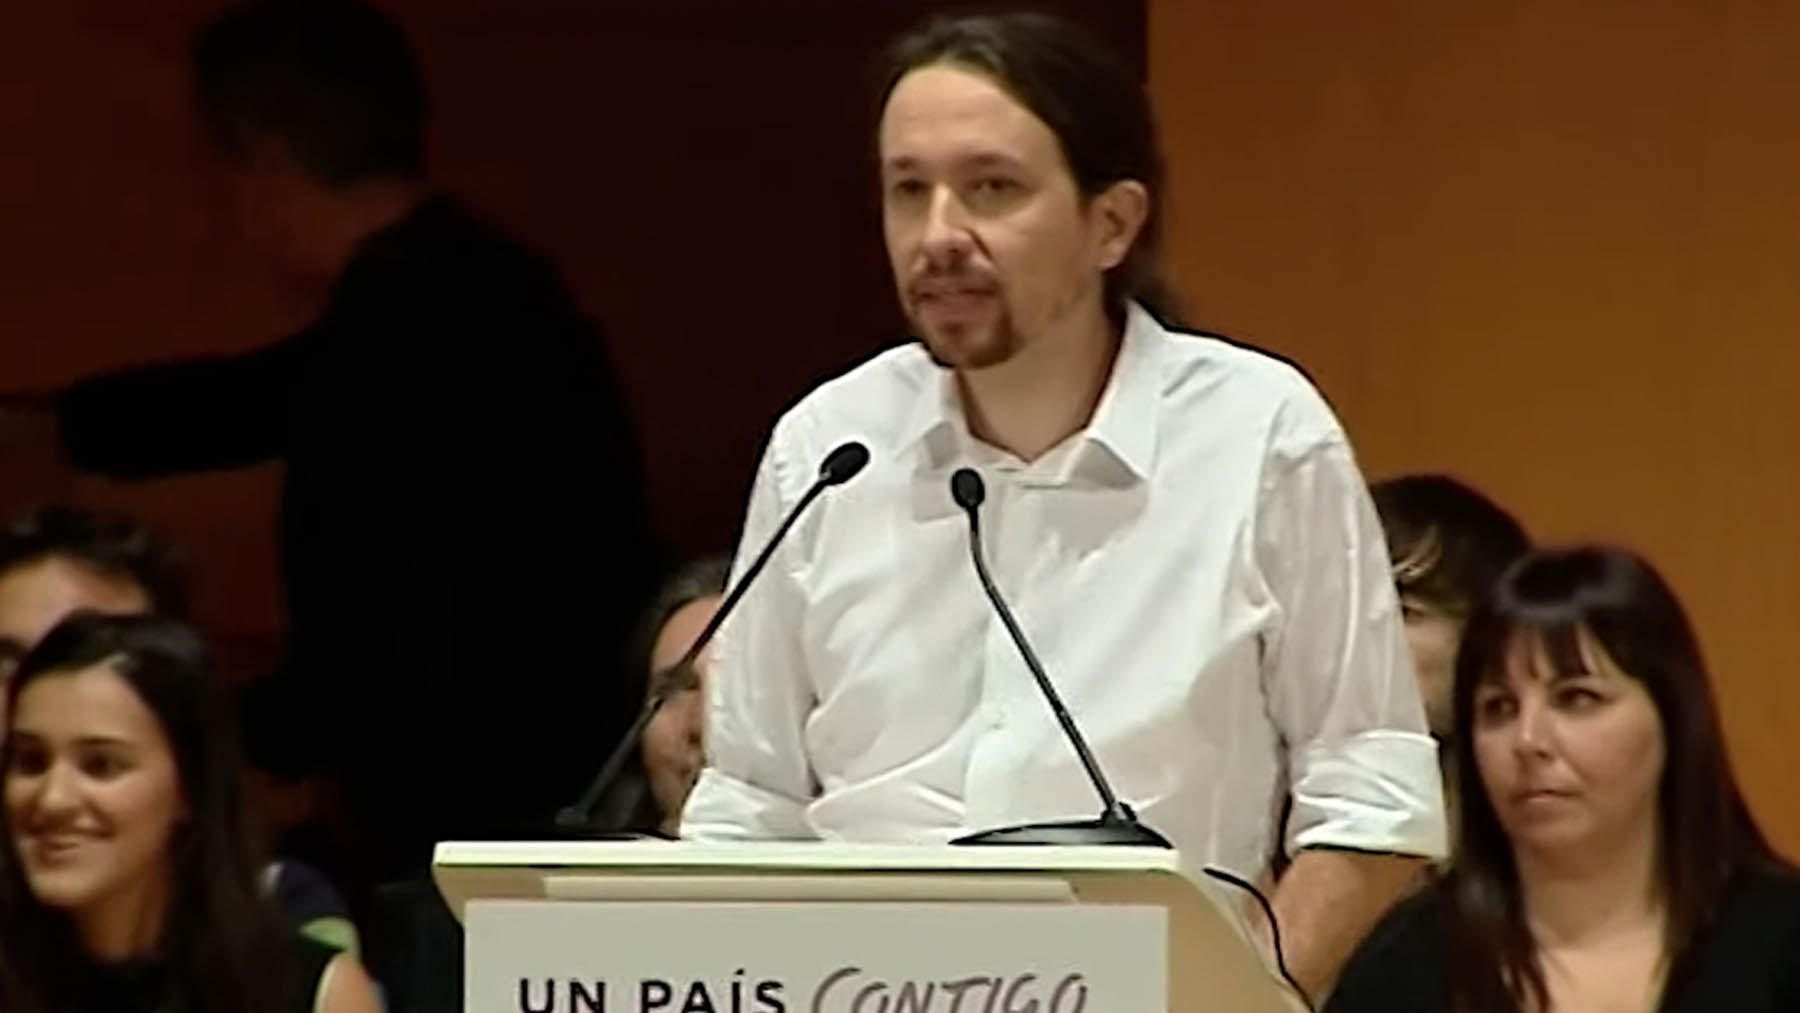 El documental de Disenso sobre el Foro de São Paulo habla de Podemos y la ‘Operación Caribe’.